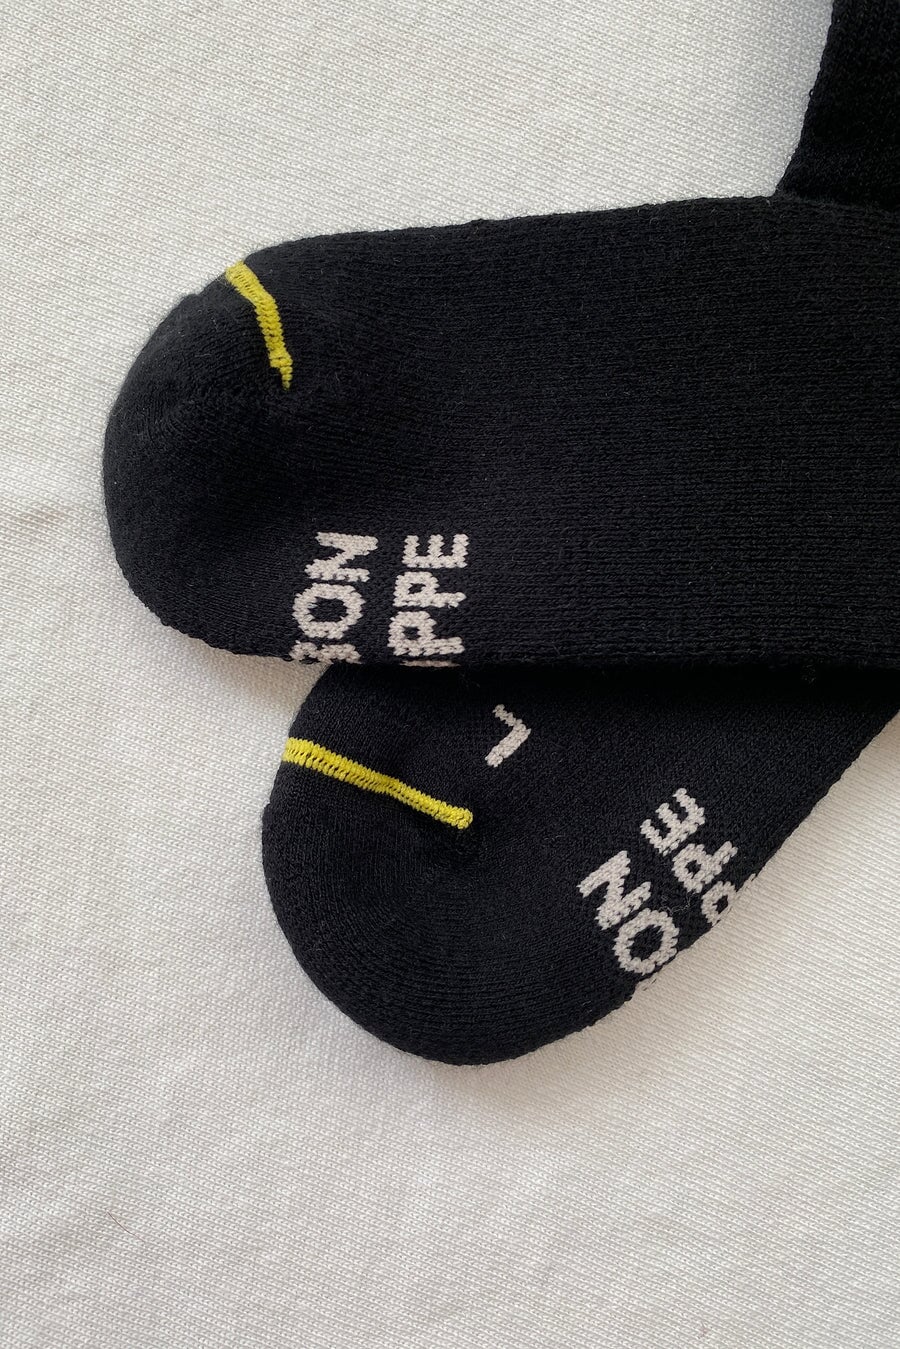 Le Bon Shoppe Hiker Socks Socks LE BON SHOPPE 